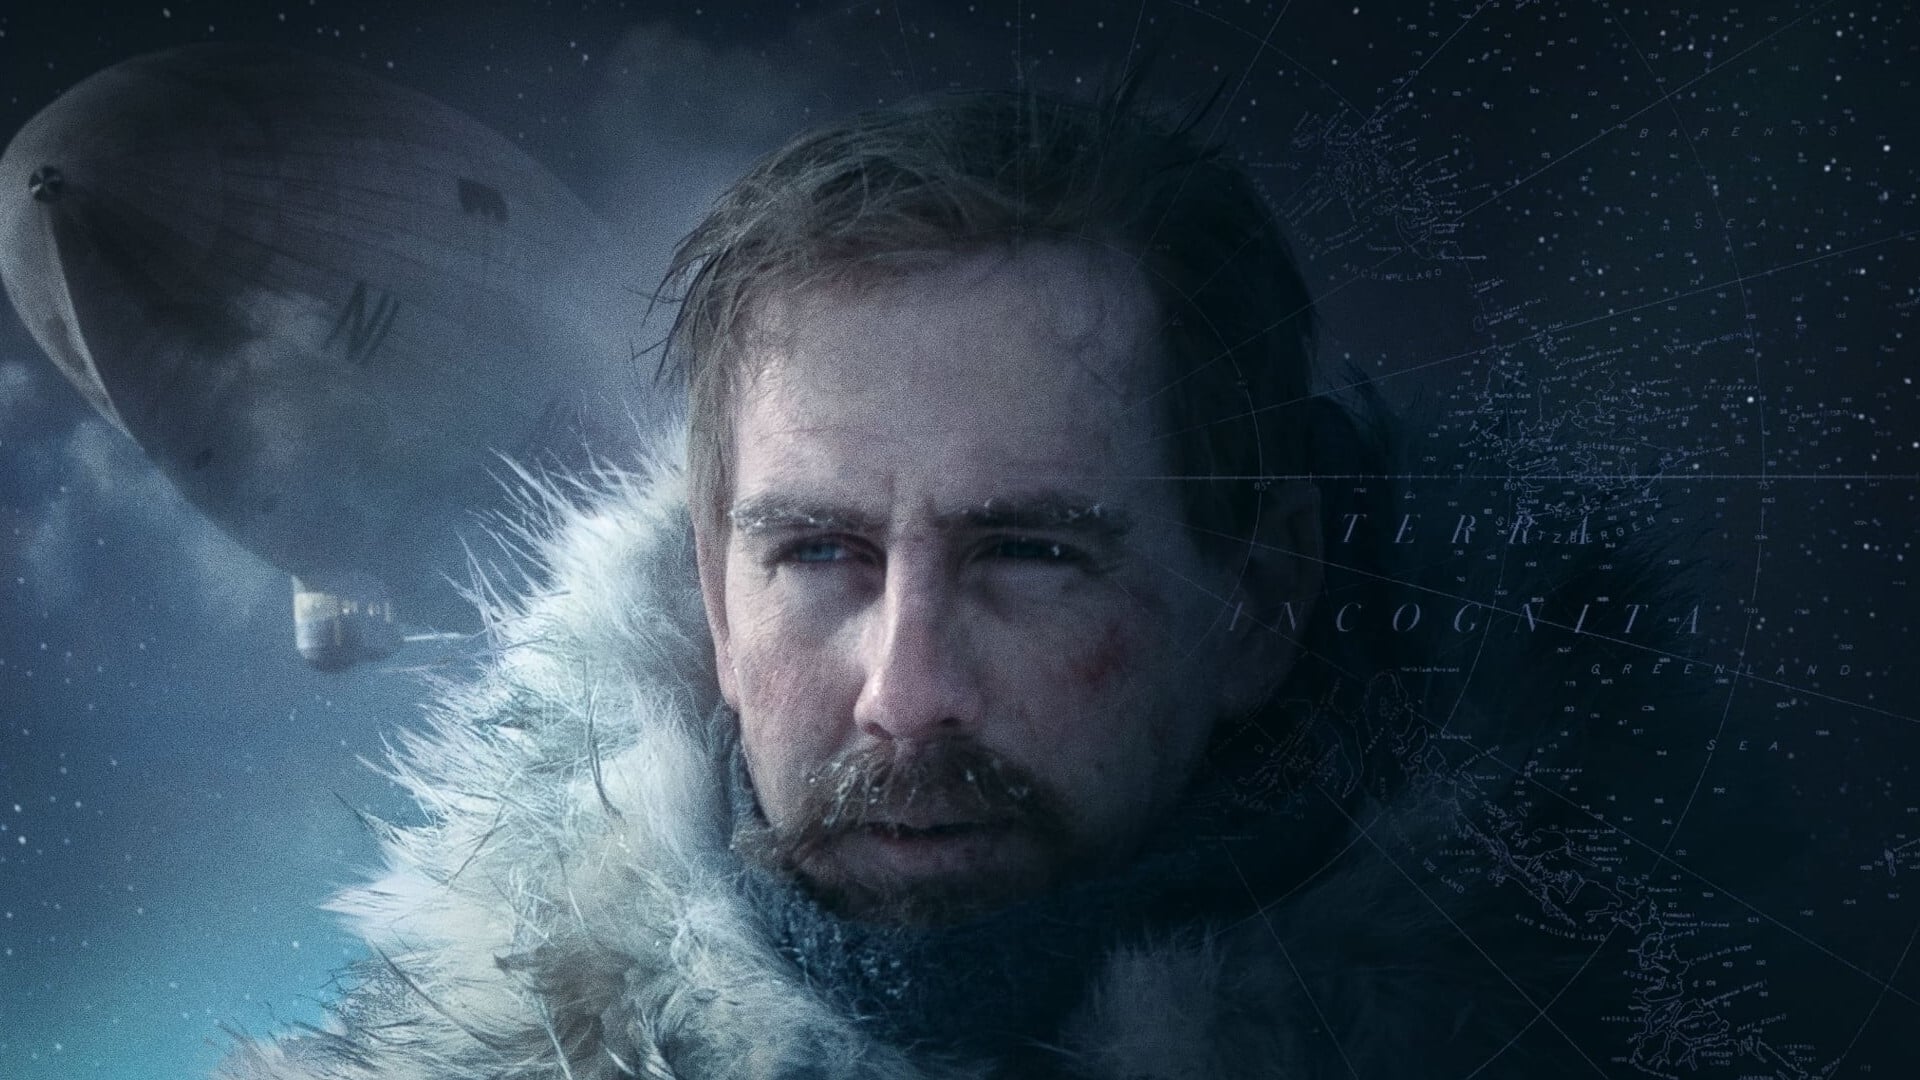 Amundsen: La Gran Expedición